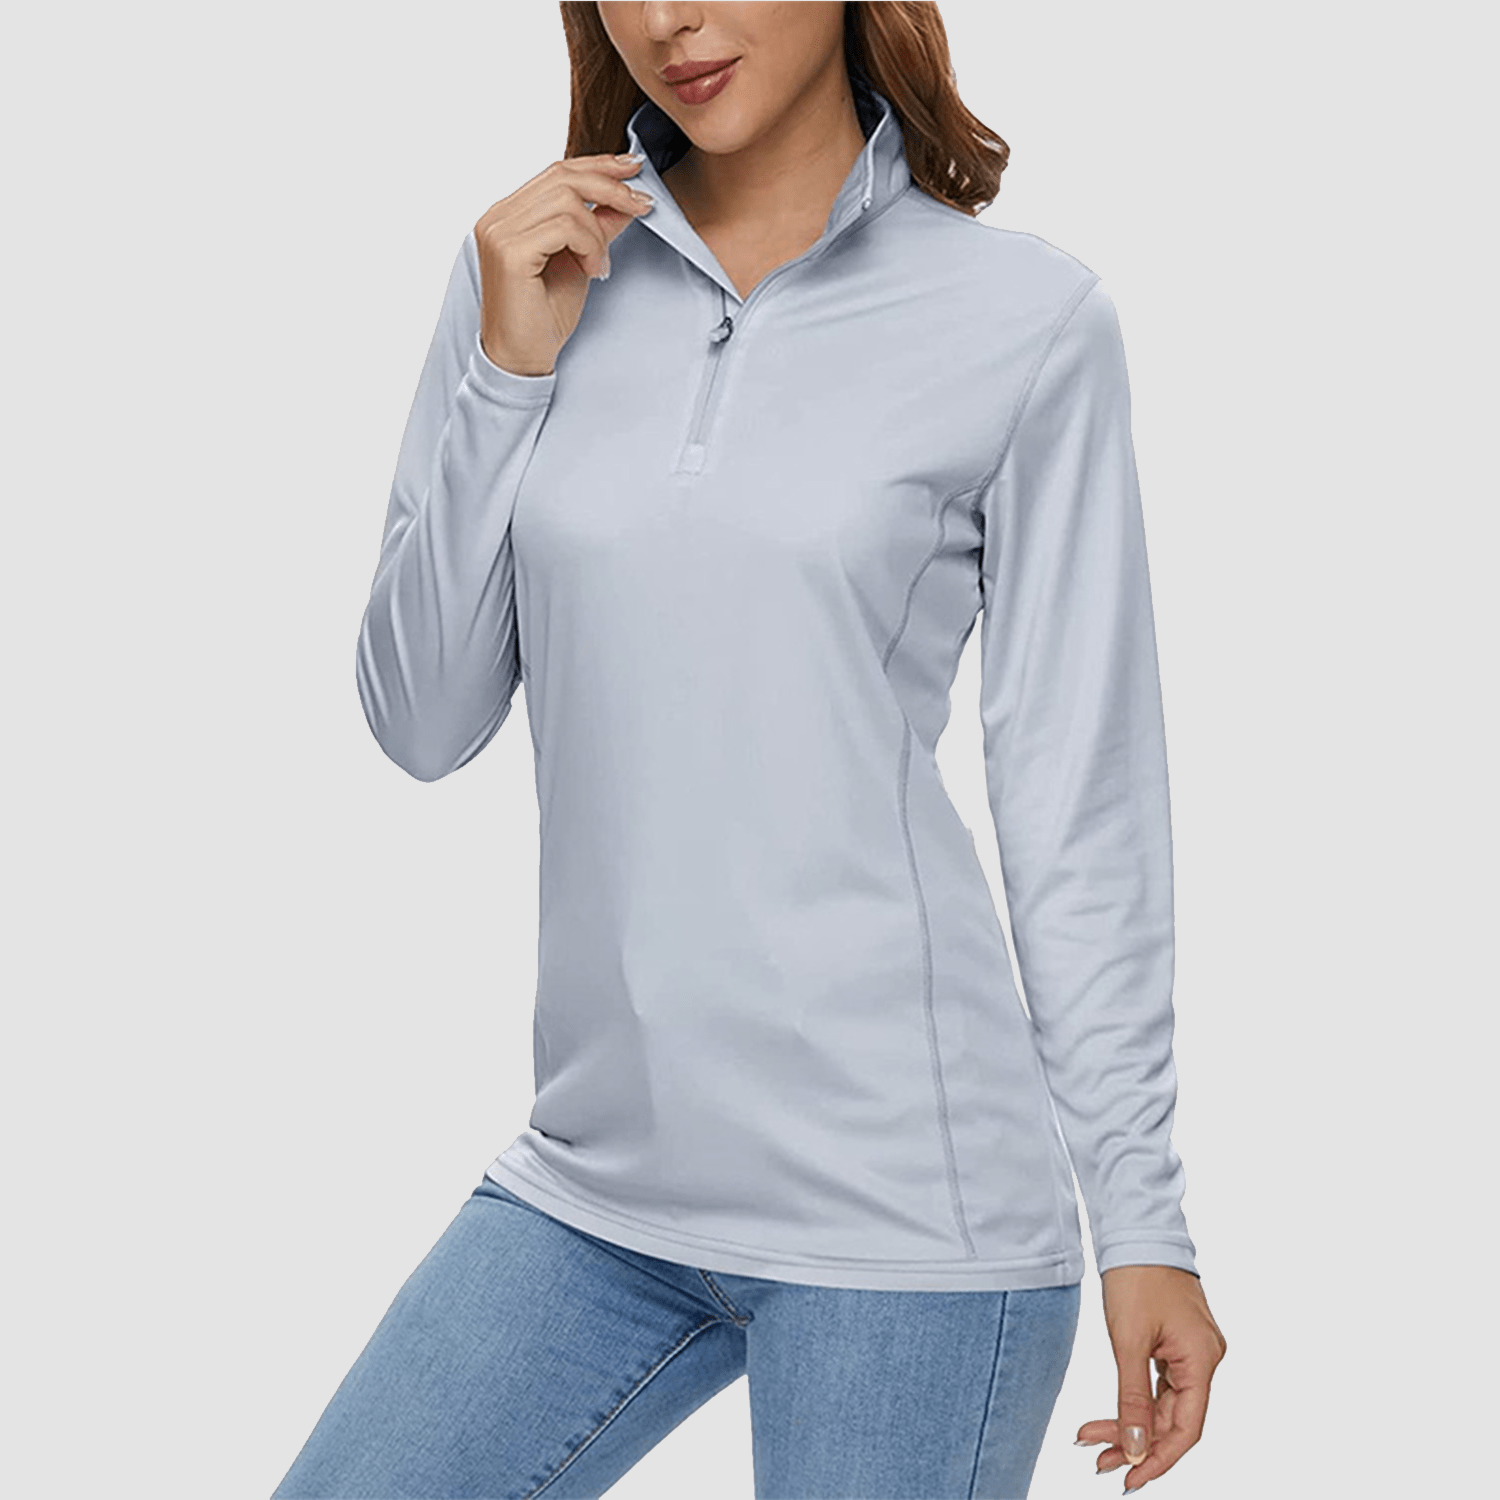 Women's Half Zip Quick Dry Shirt UPF 50+, Light Grey / M